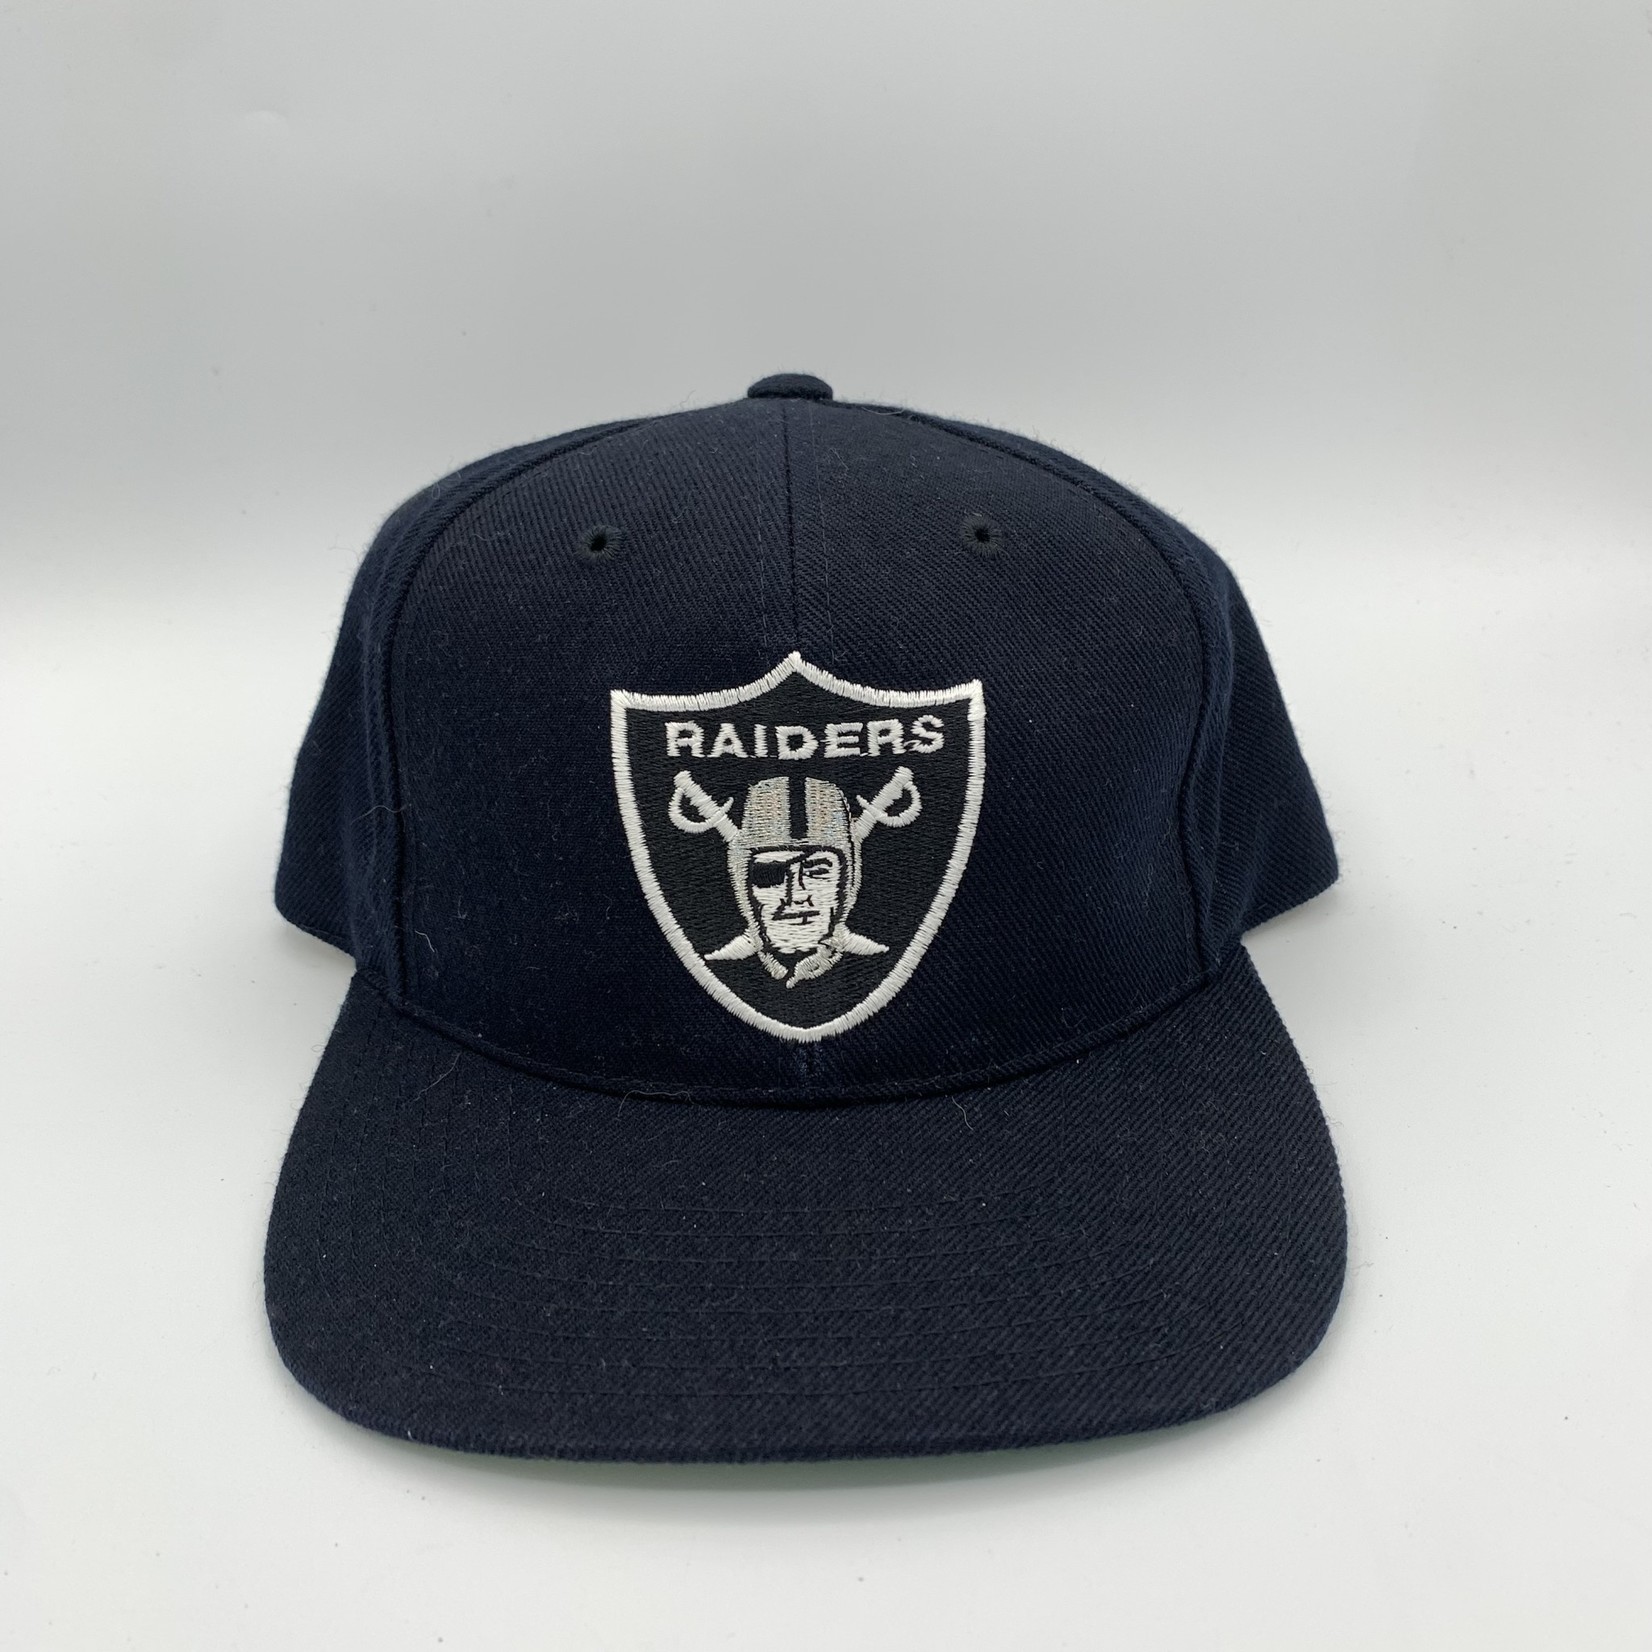 Mission Zero Vintage Raiders Snapback Hat